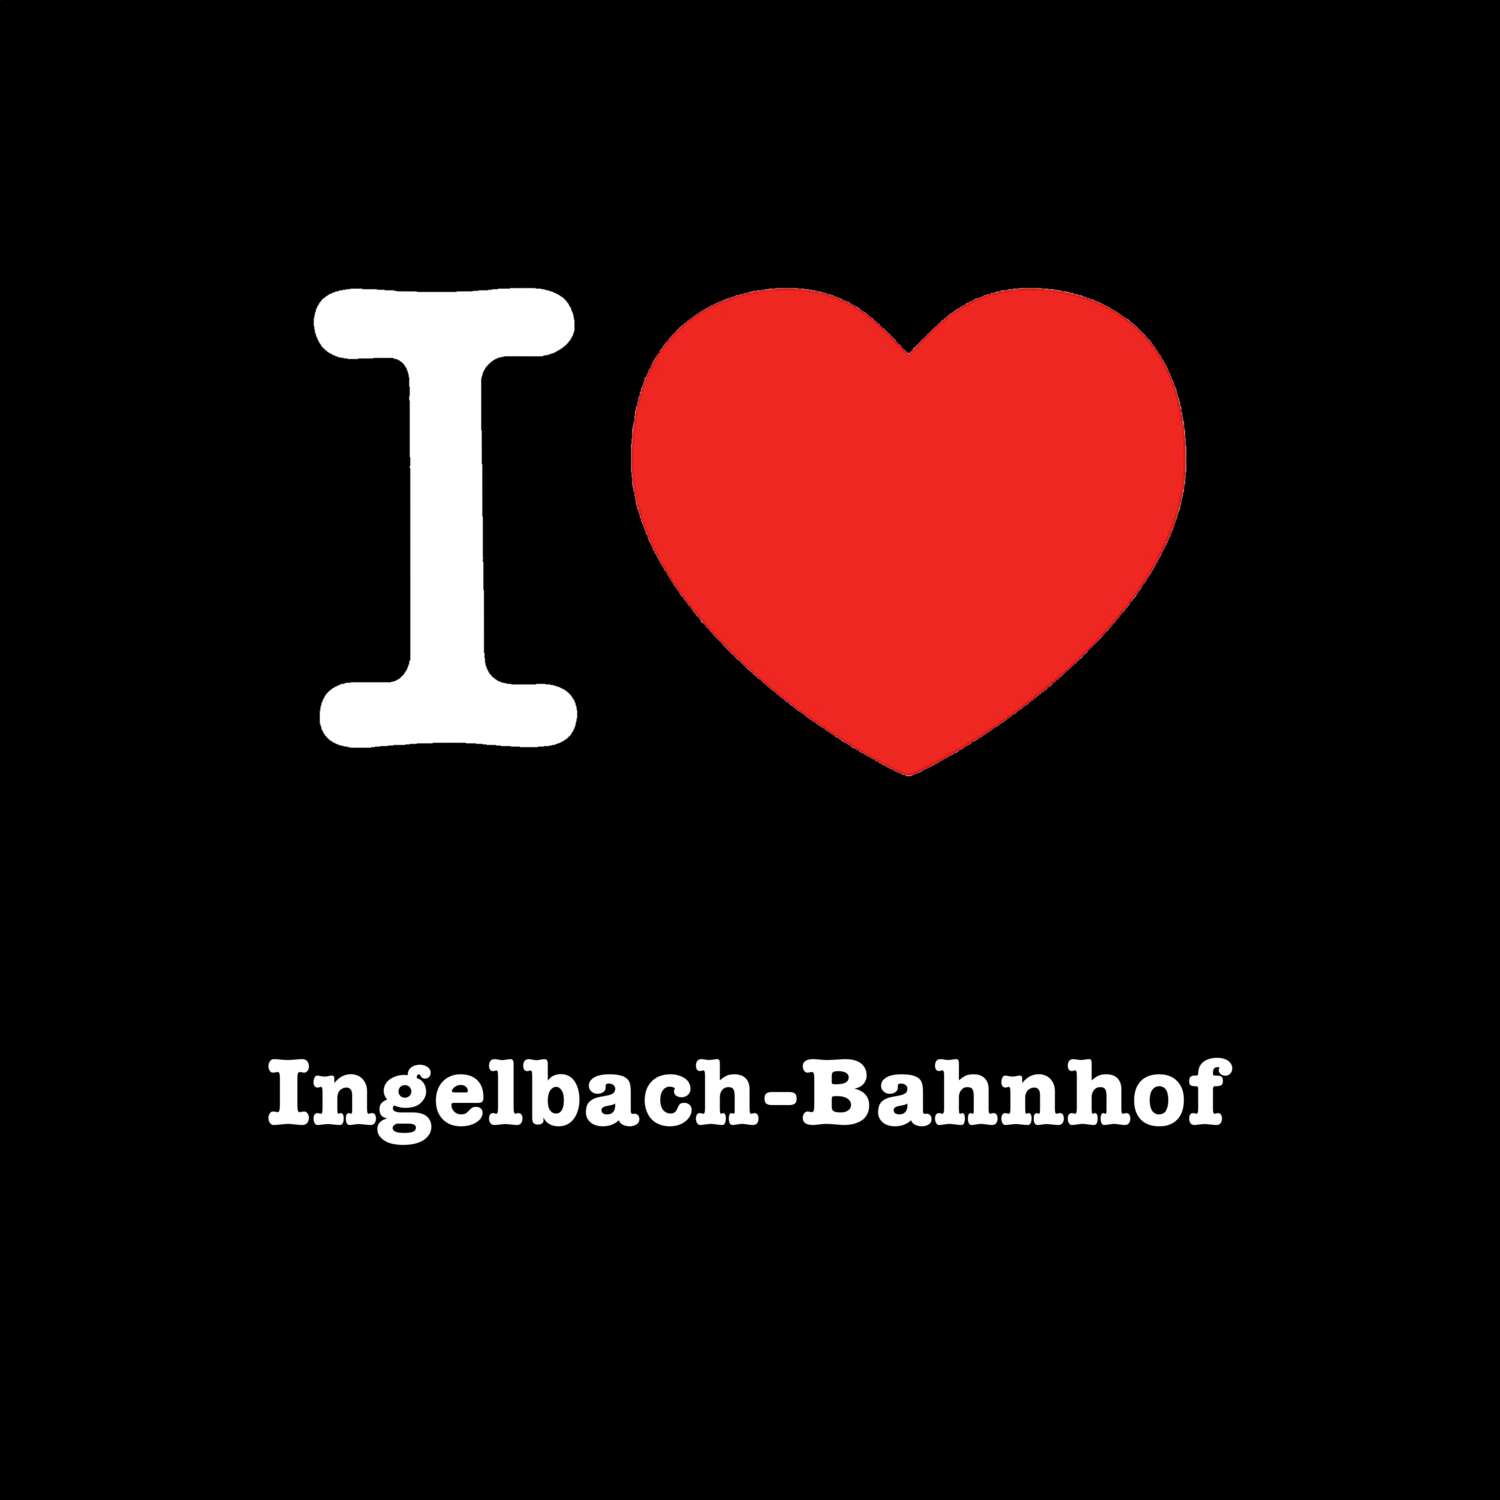 Ingelbach-Bahnhof T-Shirt »I love«